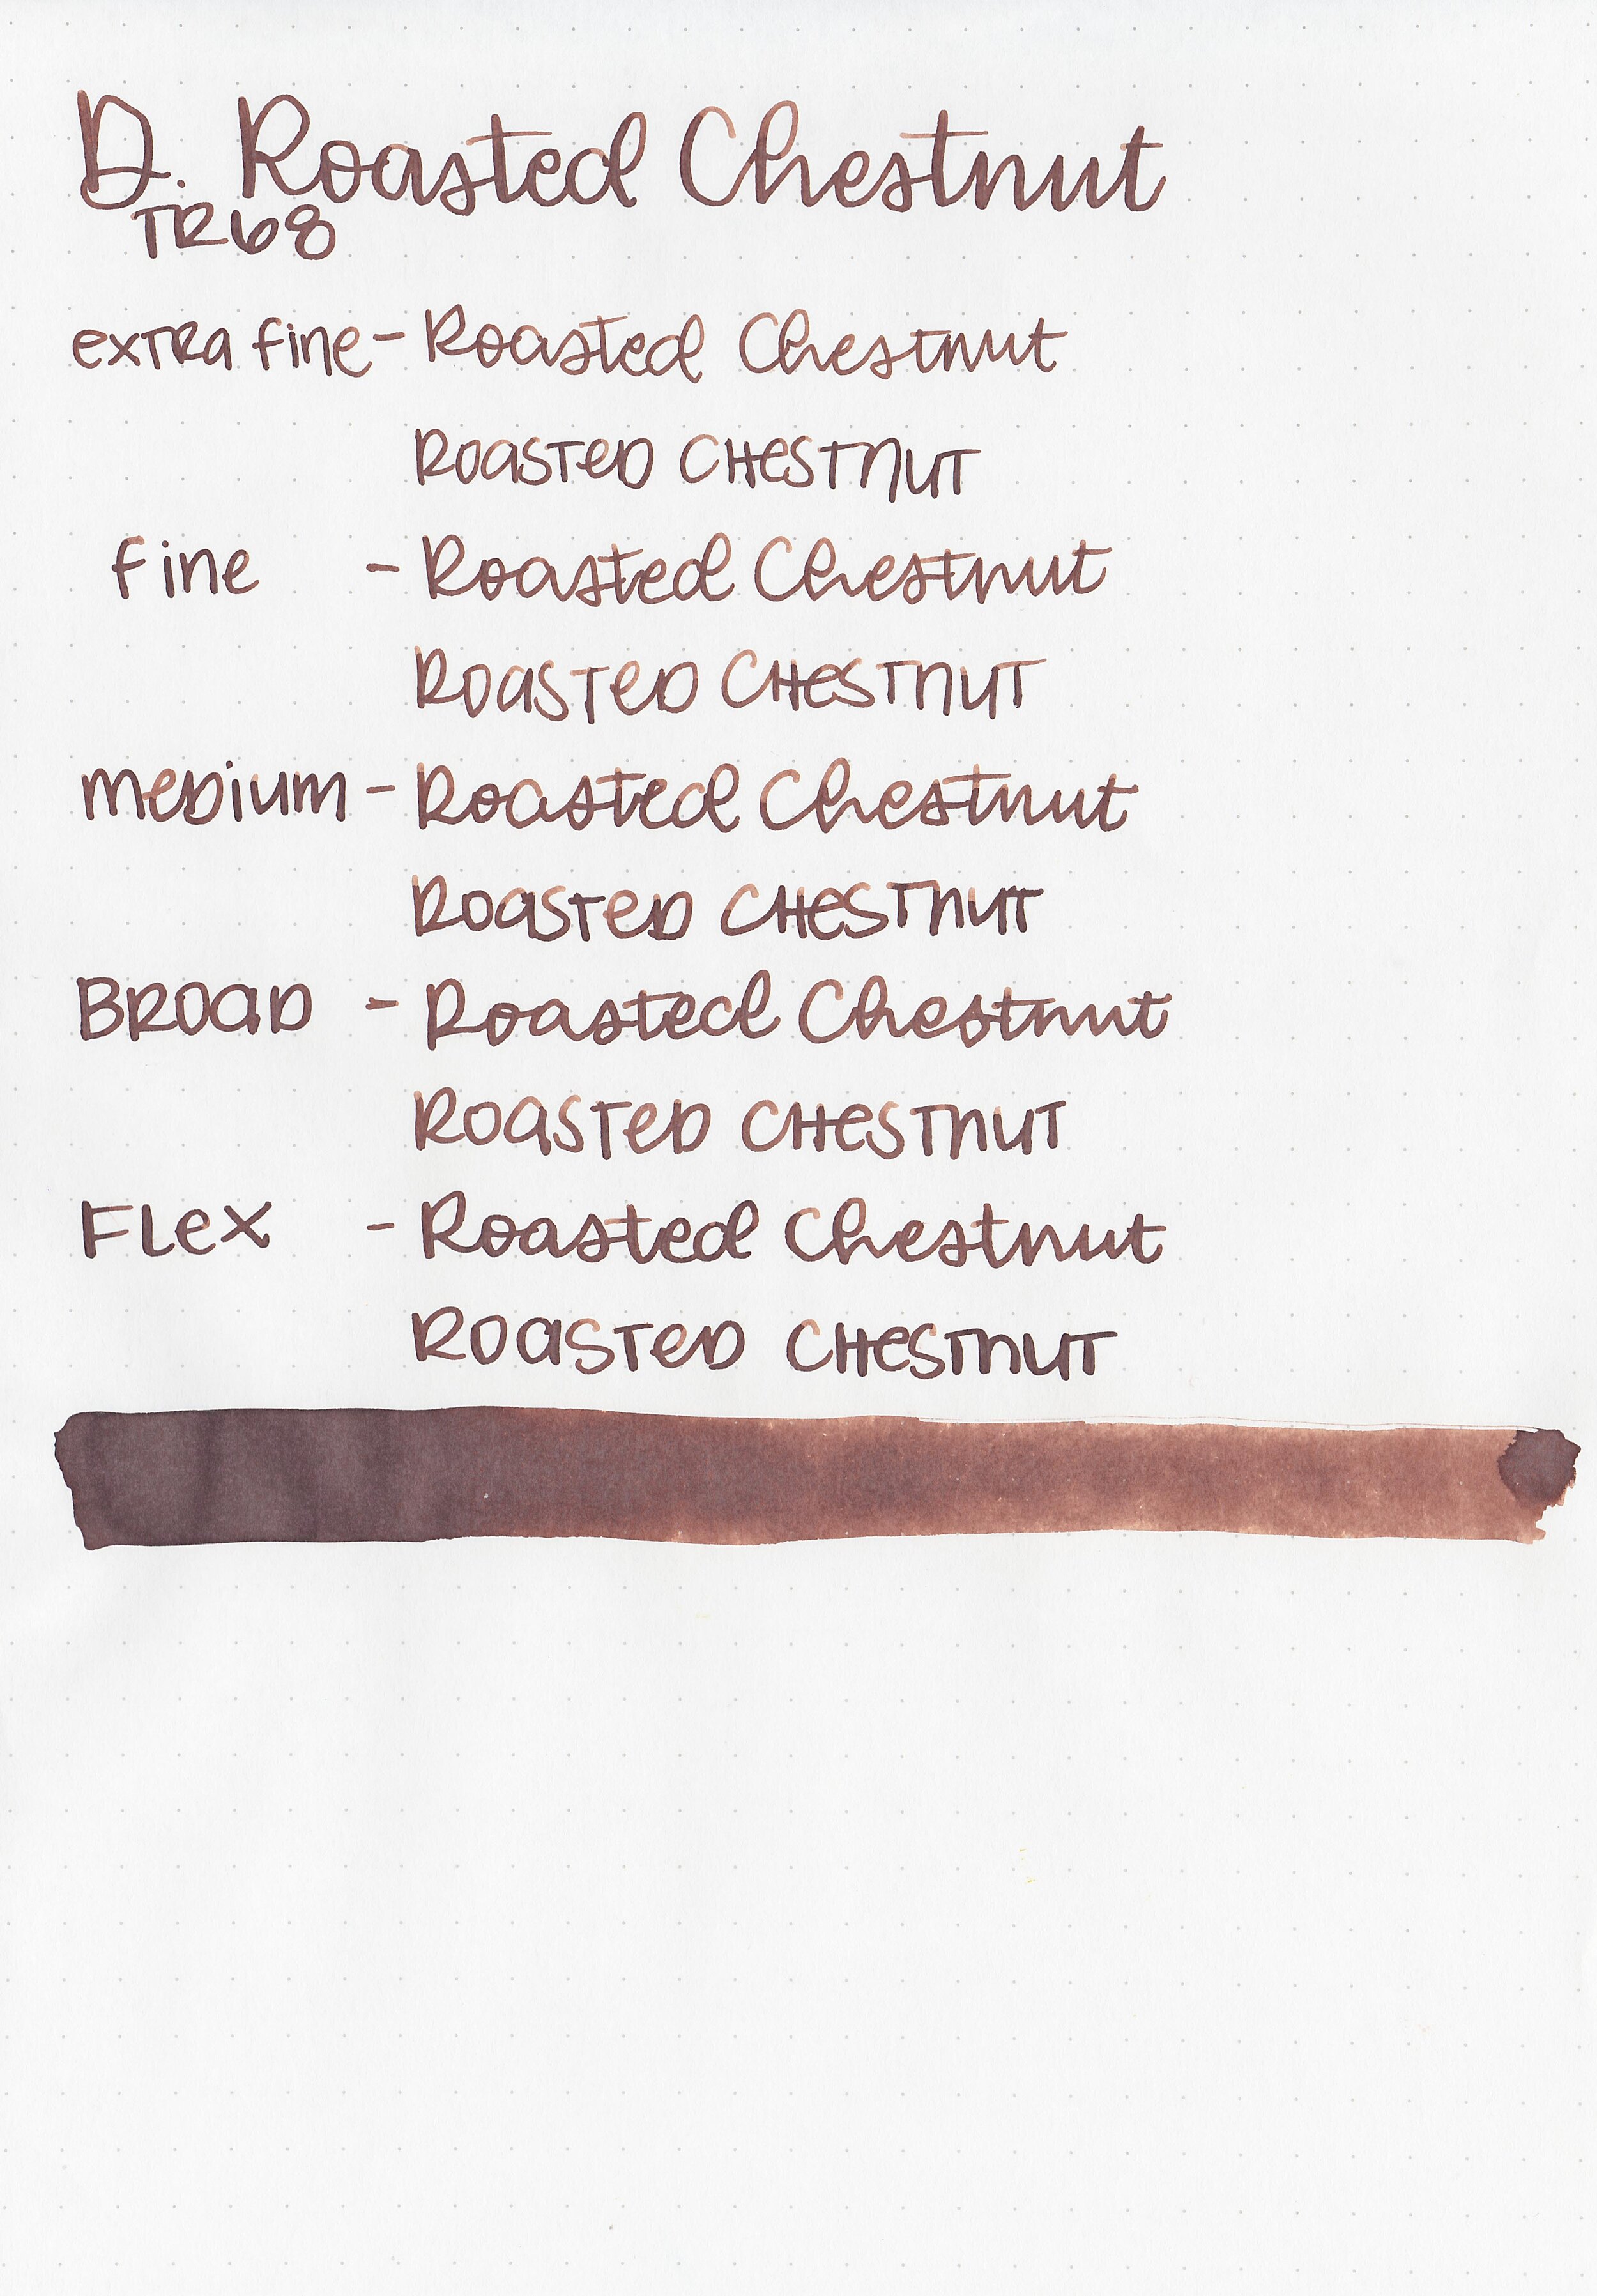 d-roasted-chestnut-7.jpg